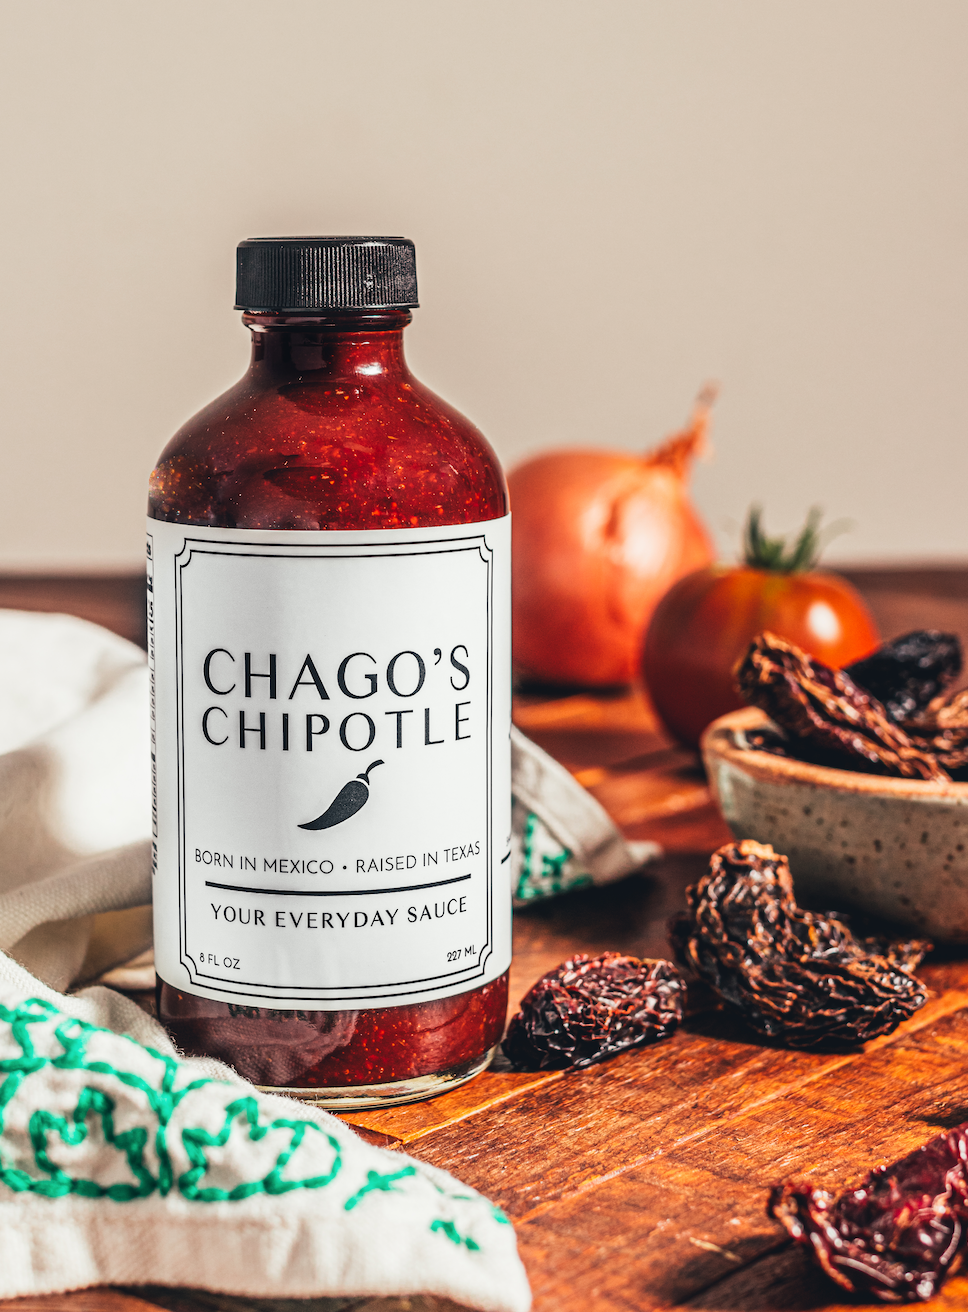 Chago's Chipotle